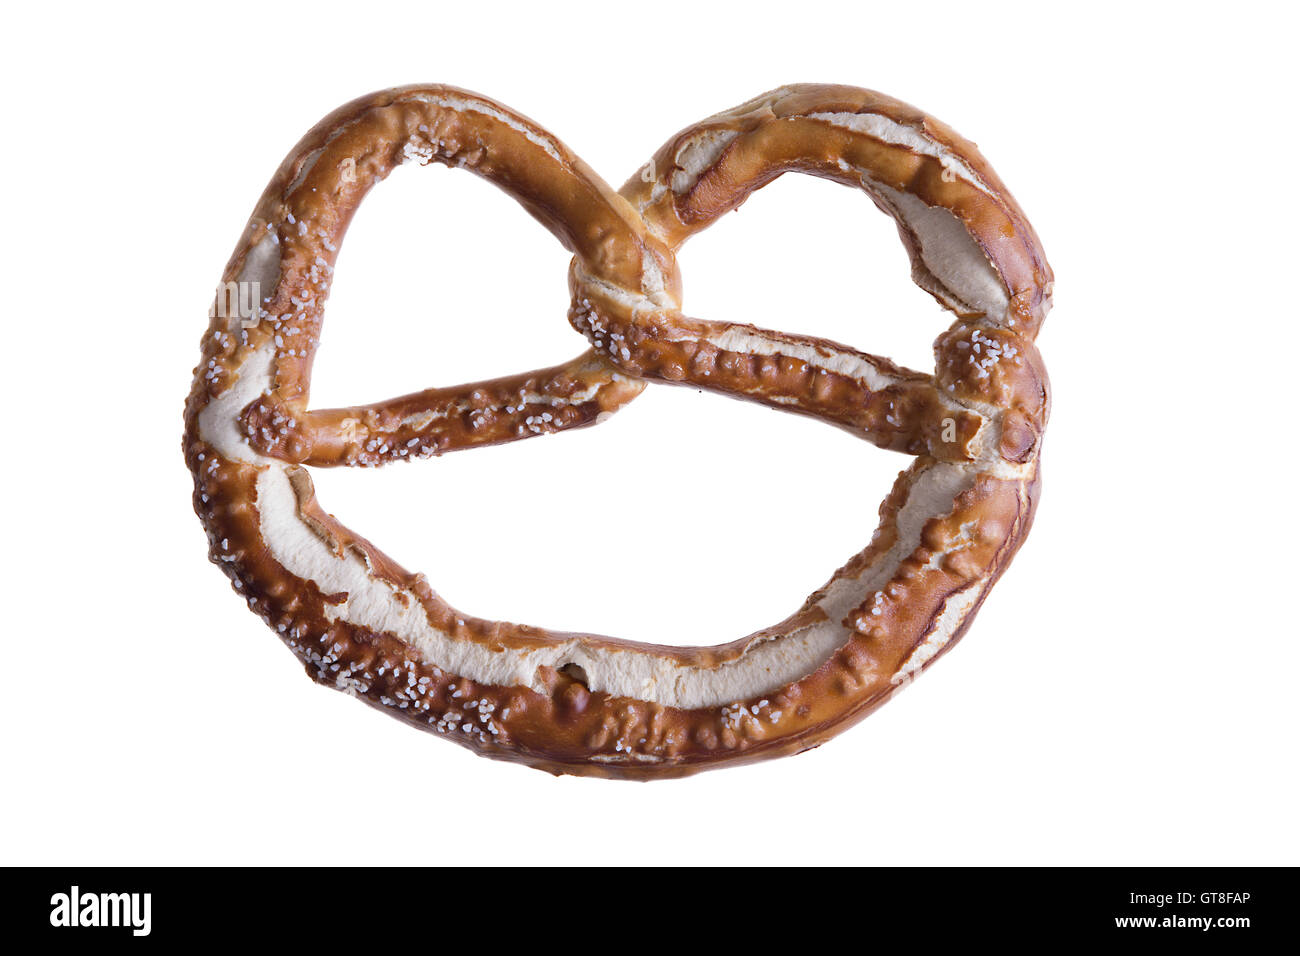 Isolato tradizionale nodo a forma di pretzel, un disco fragile biscotto salato di origine tedesca è servito come un popolare snack e aperitivi Foto Stock